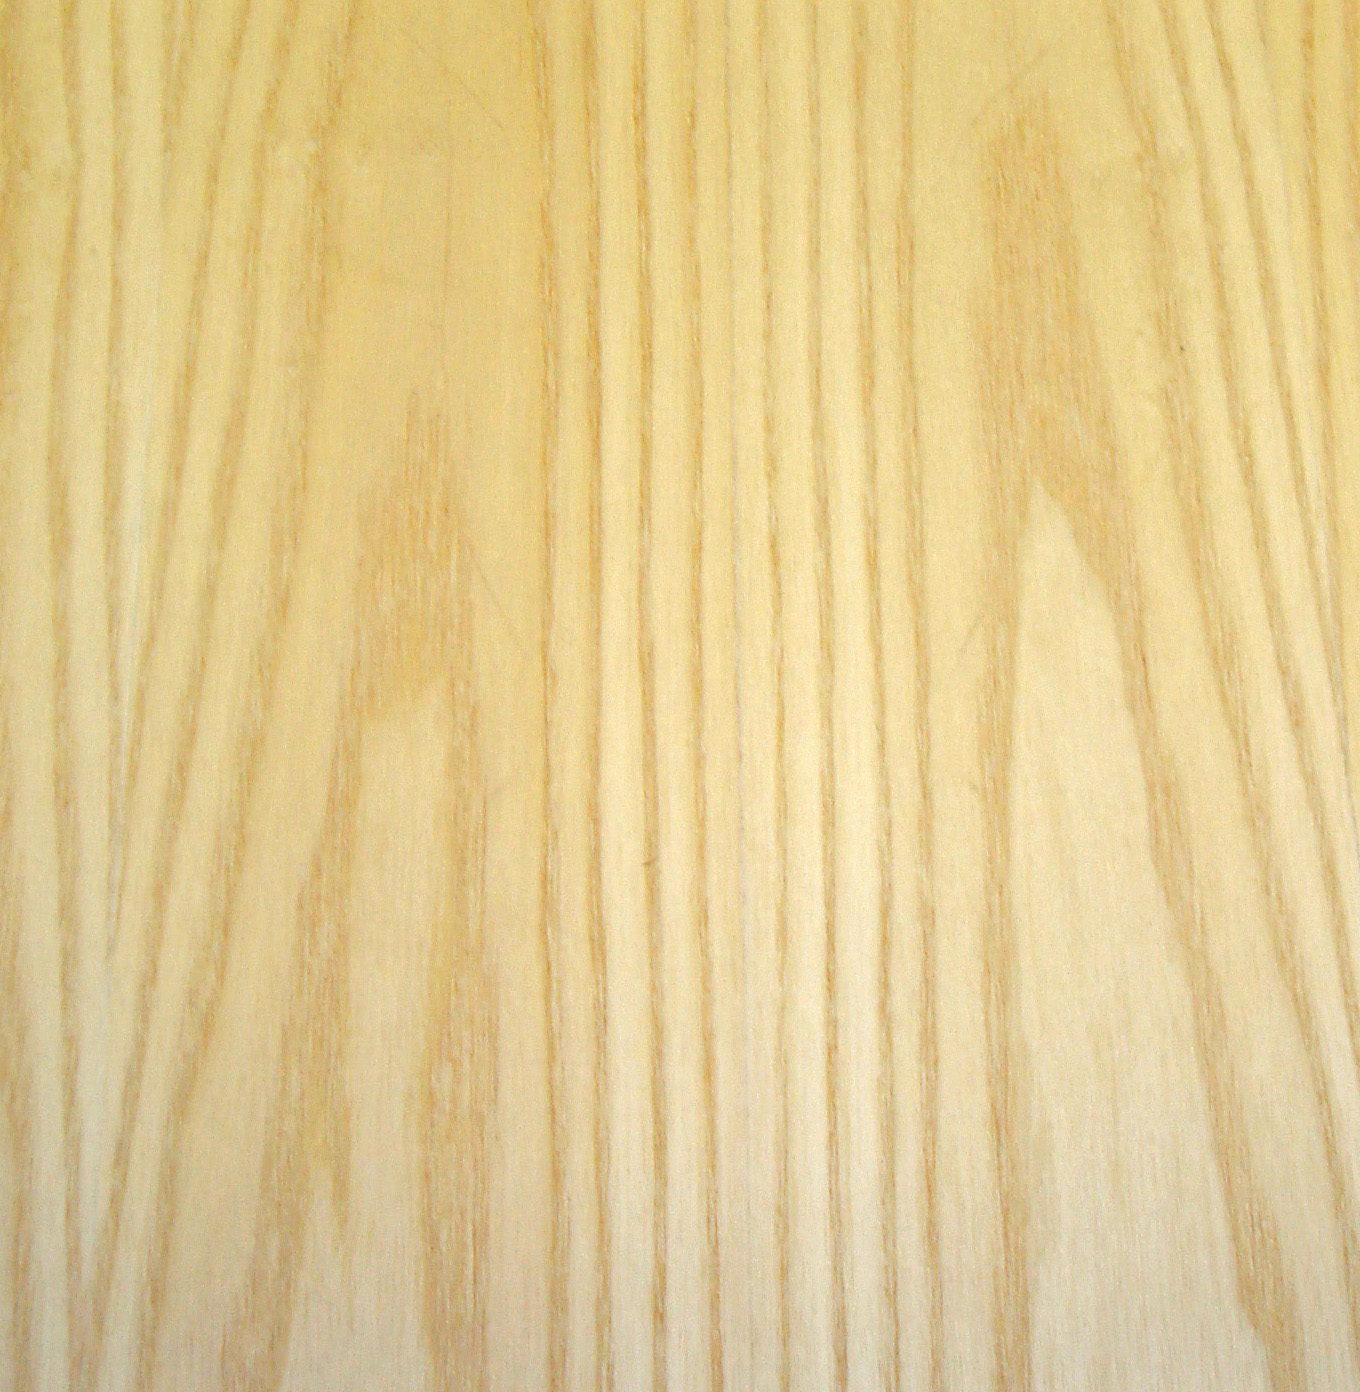 Walnut Quarter Cut Wood Veneer Sheet - JSO Wood Products